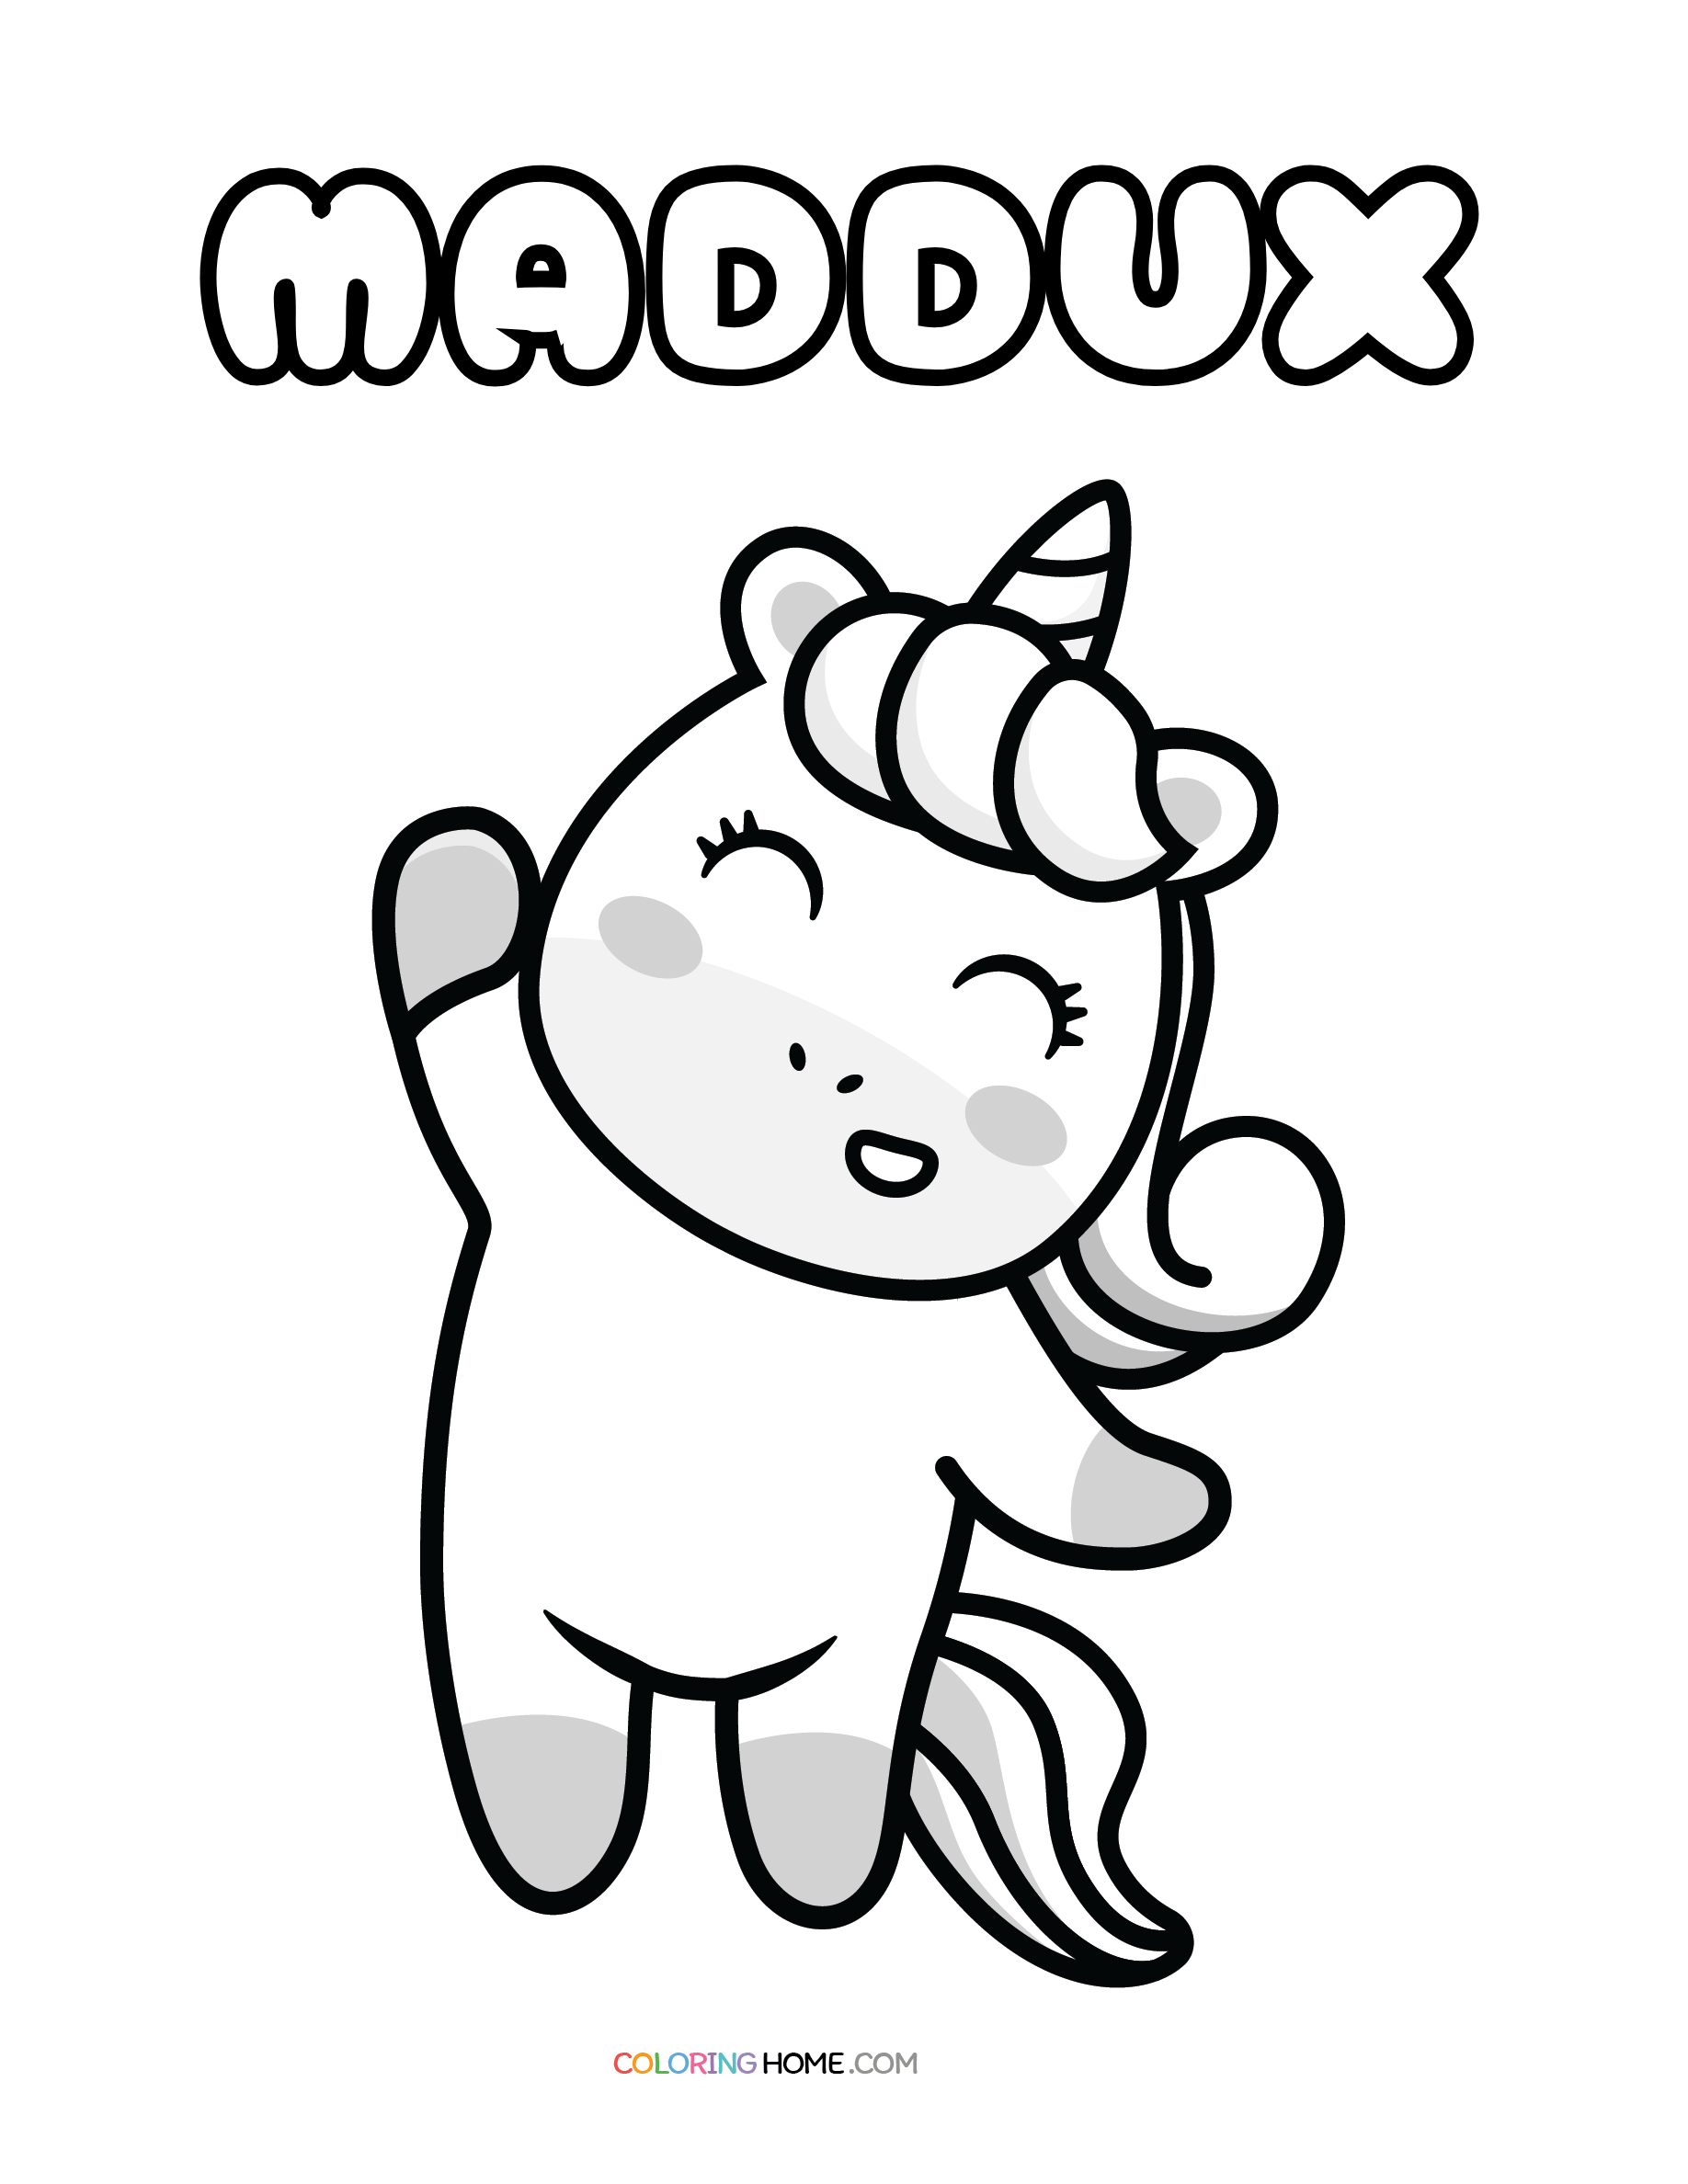 Maddux unicorn coloring page